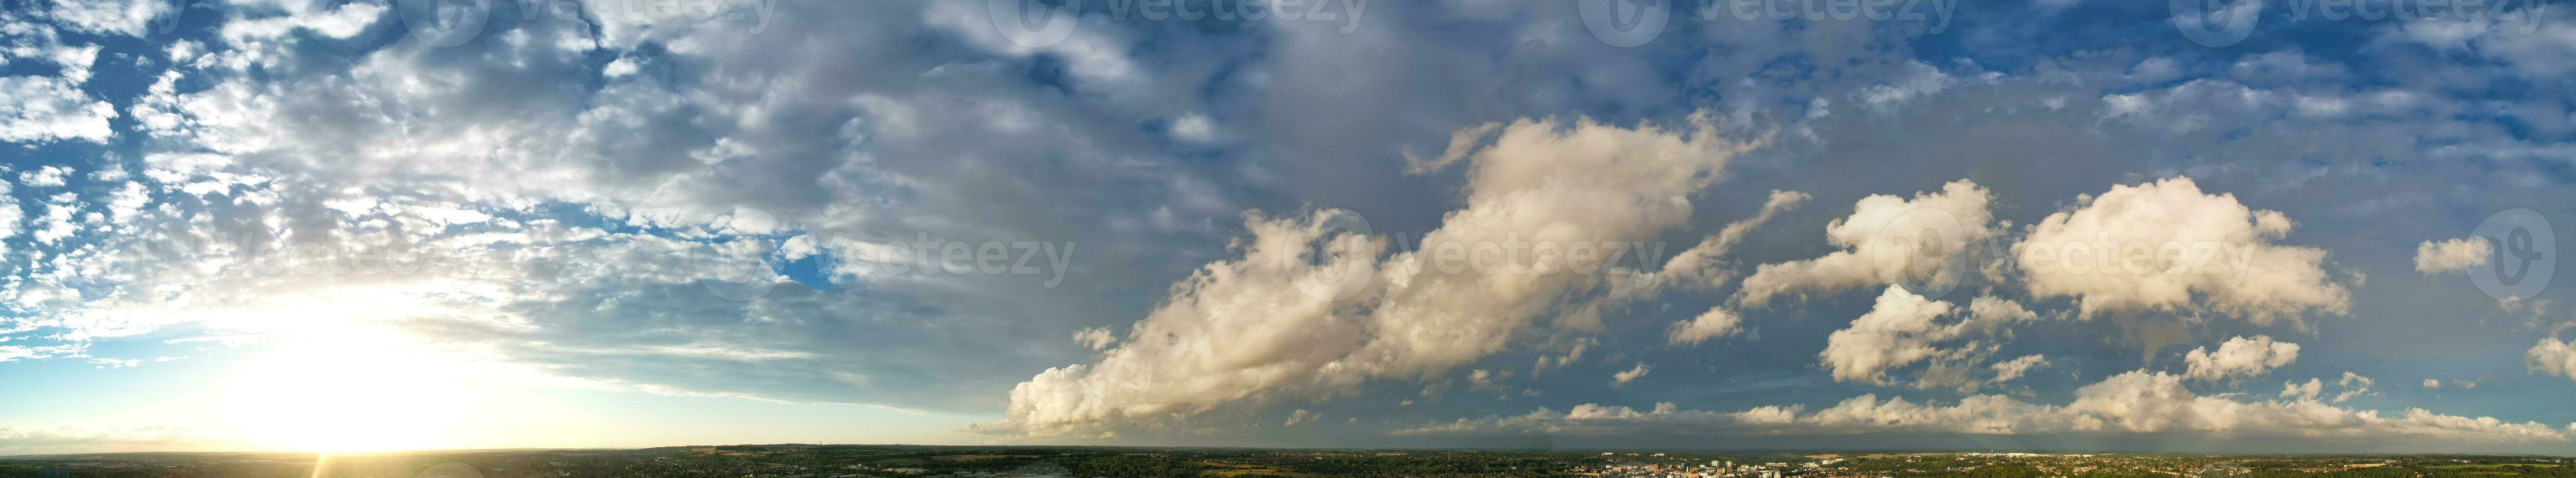 dramático nuvens sobre luton cidade do Inglaterra ótimo bretanha. foto